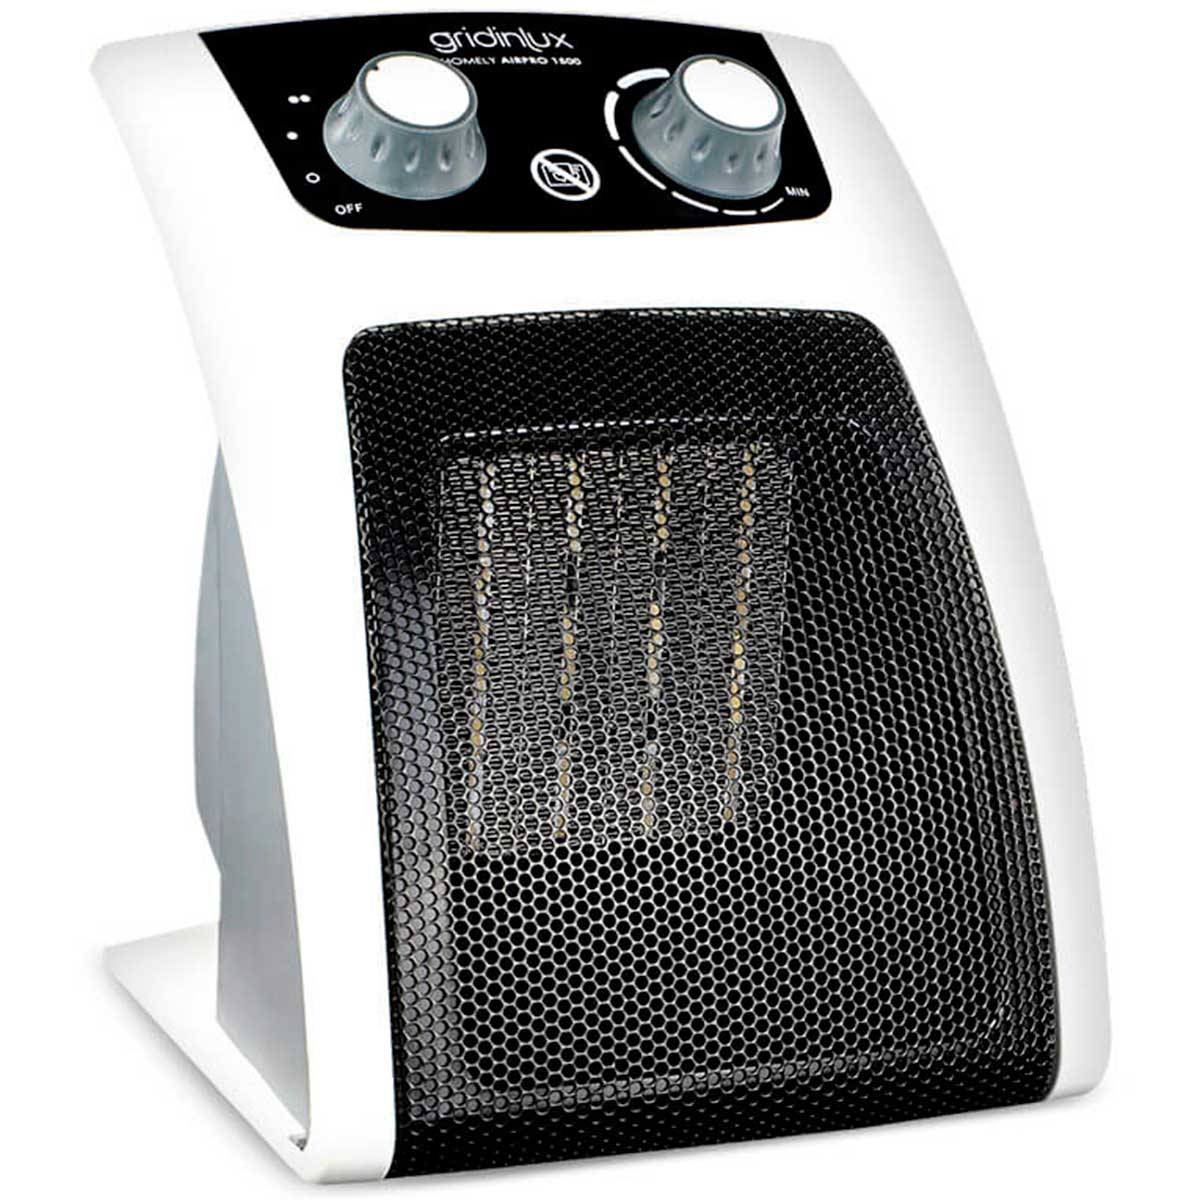 Radiateur céramique portatif For Living avec thermostat, 1500 W, noir